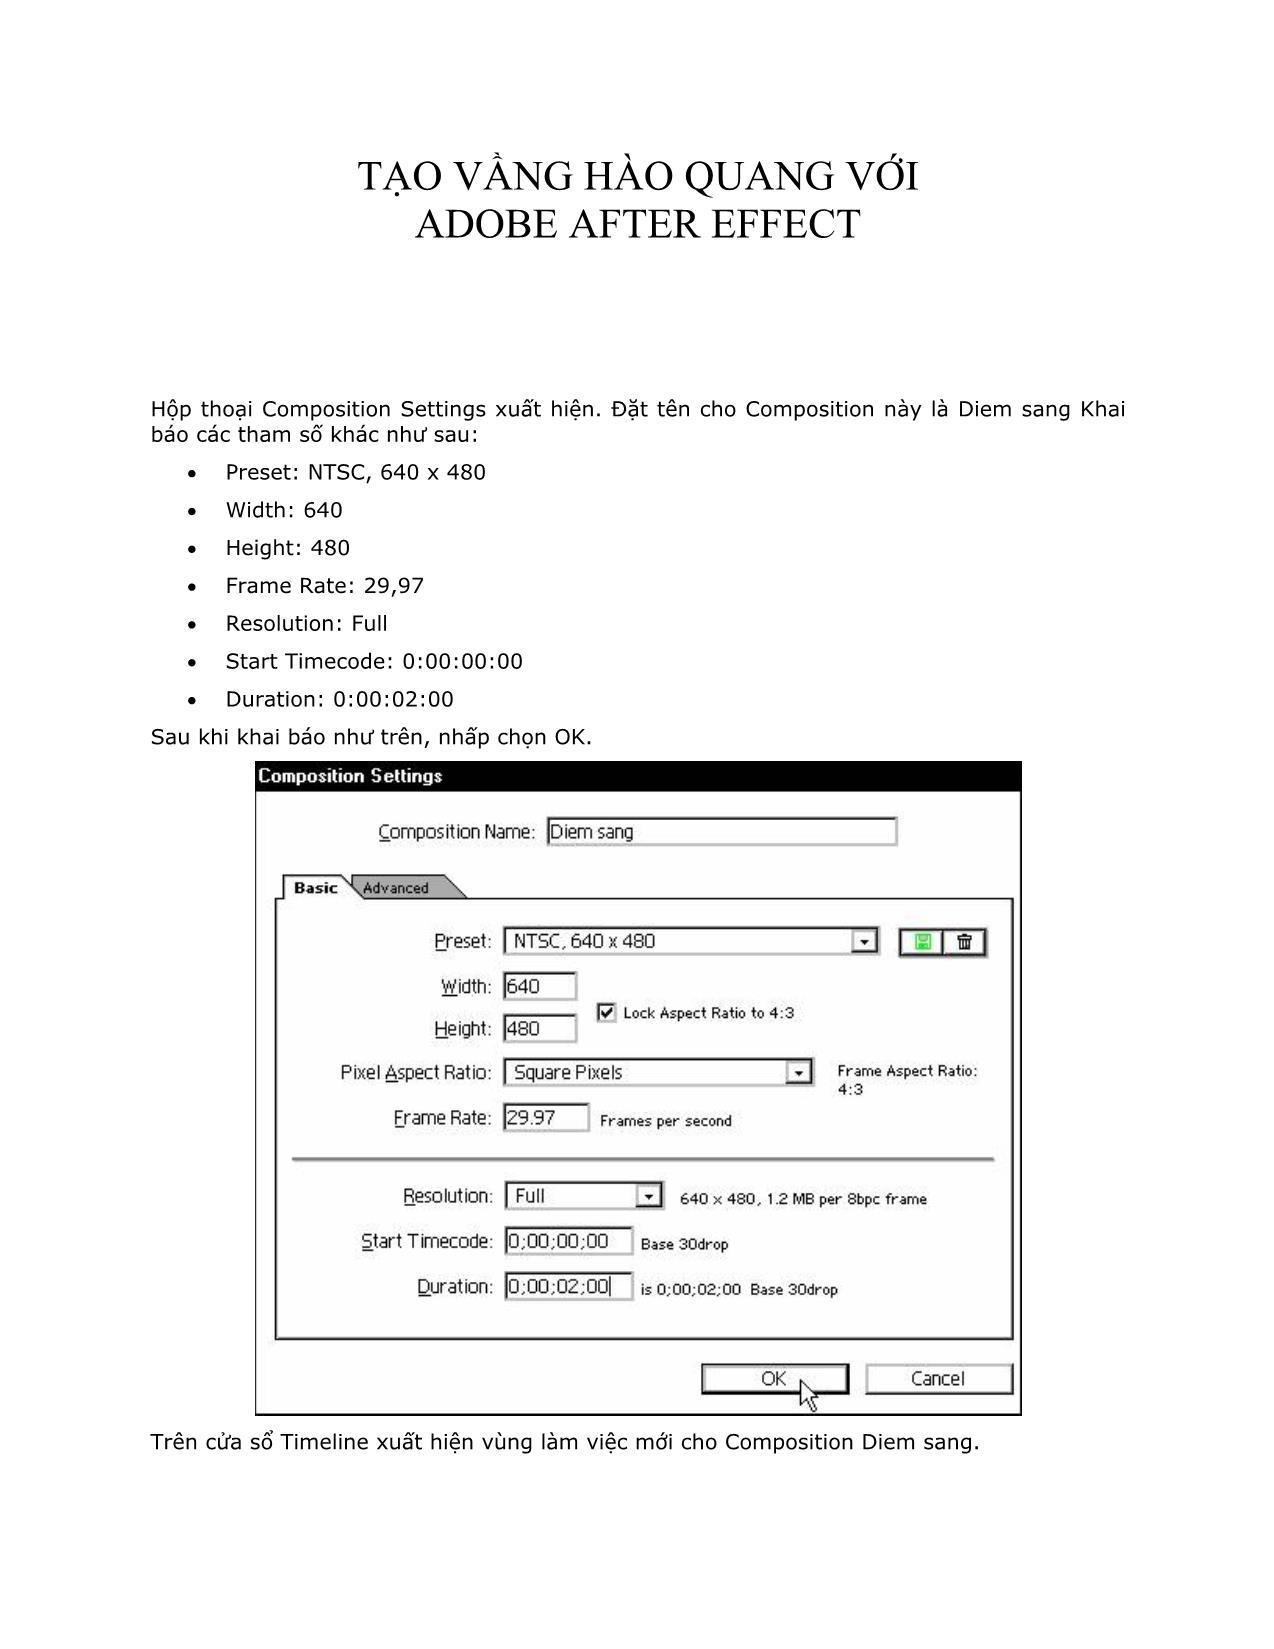 Tạo vầng hào quang với Adobe After Effect (Phần 2) trang 1